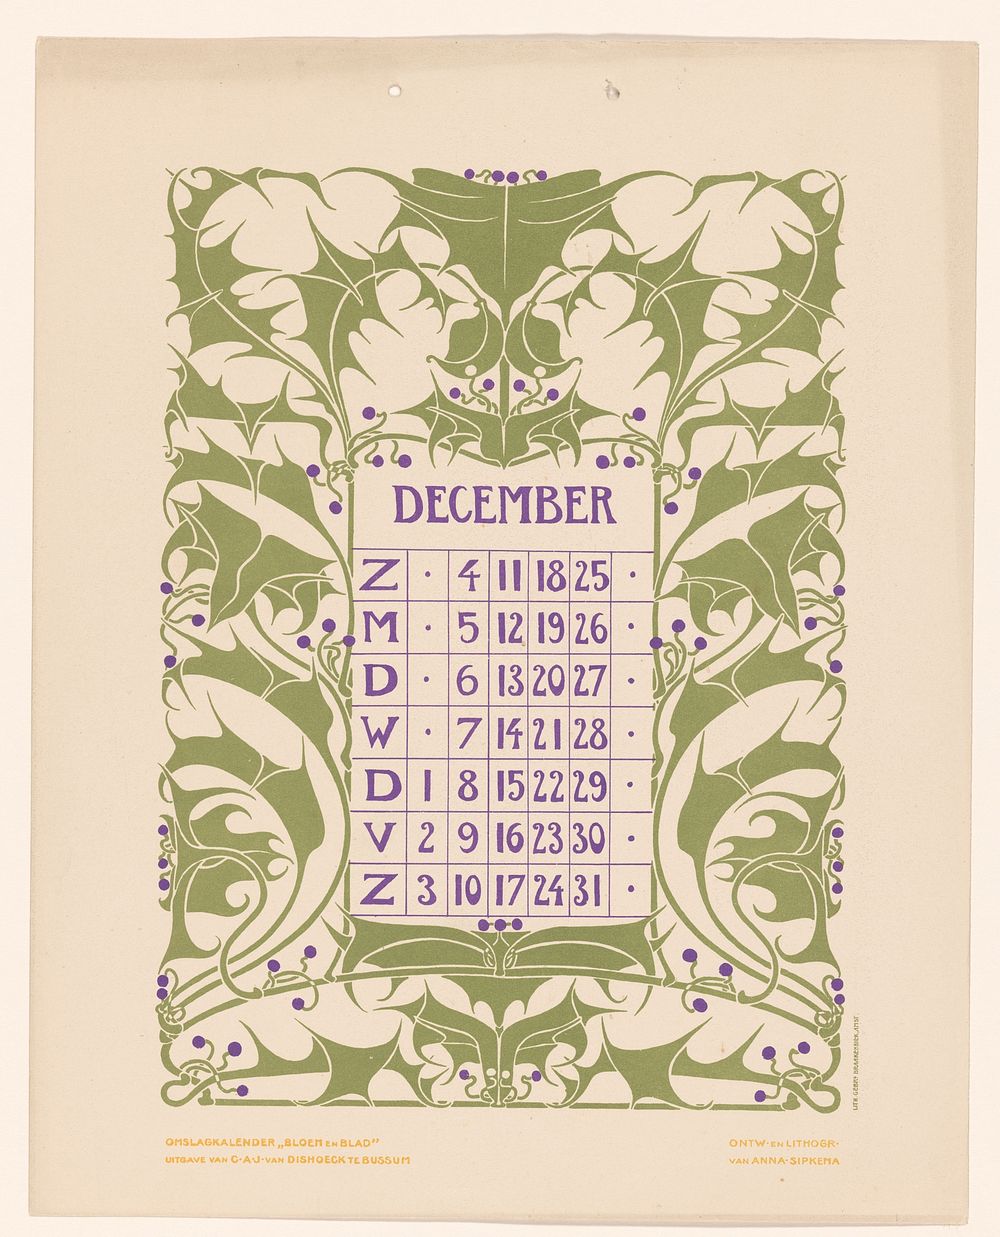 Kalenderblad december met hulst (before 1904) by Anna Sipkema, Anna Sipkema, Gebroeders Braakensiek and C A J van Dishoeck